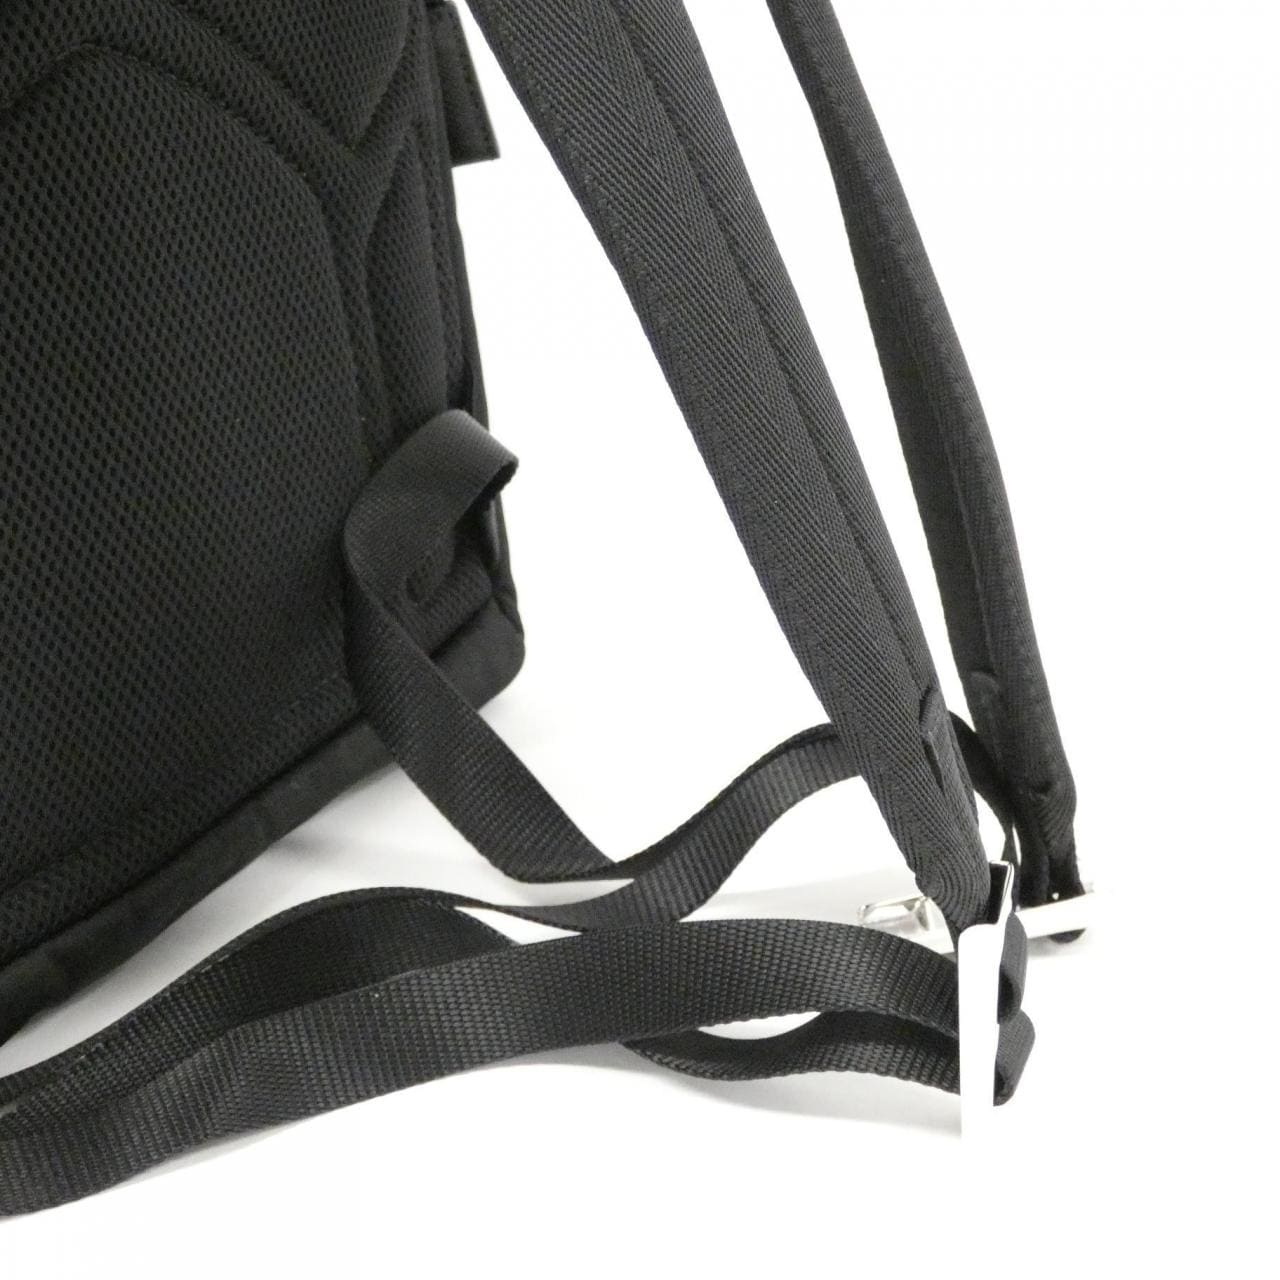 [BRAND NEW] Prada 2VZ104 Backpack